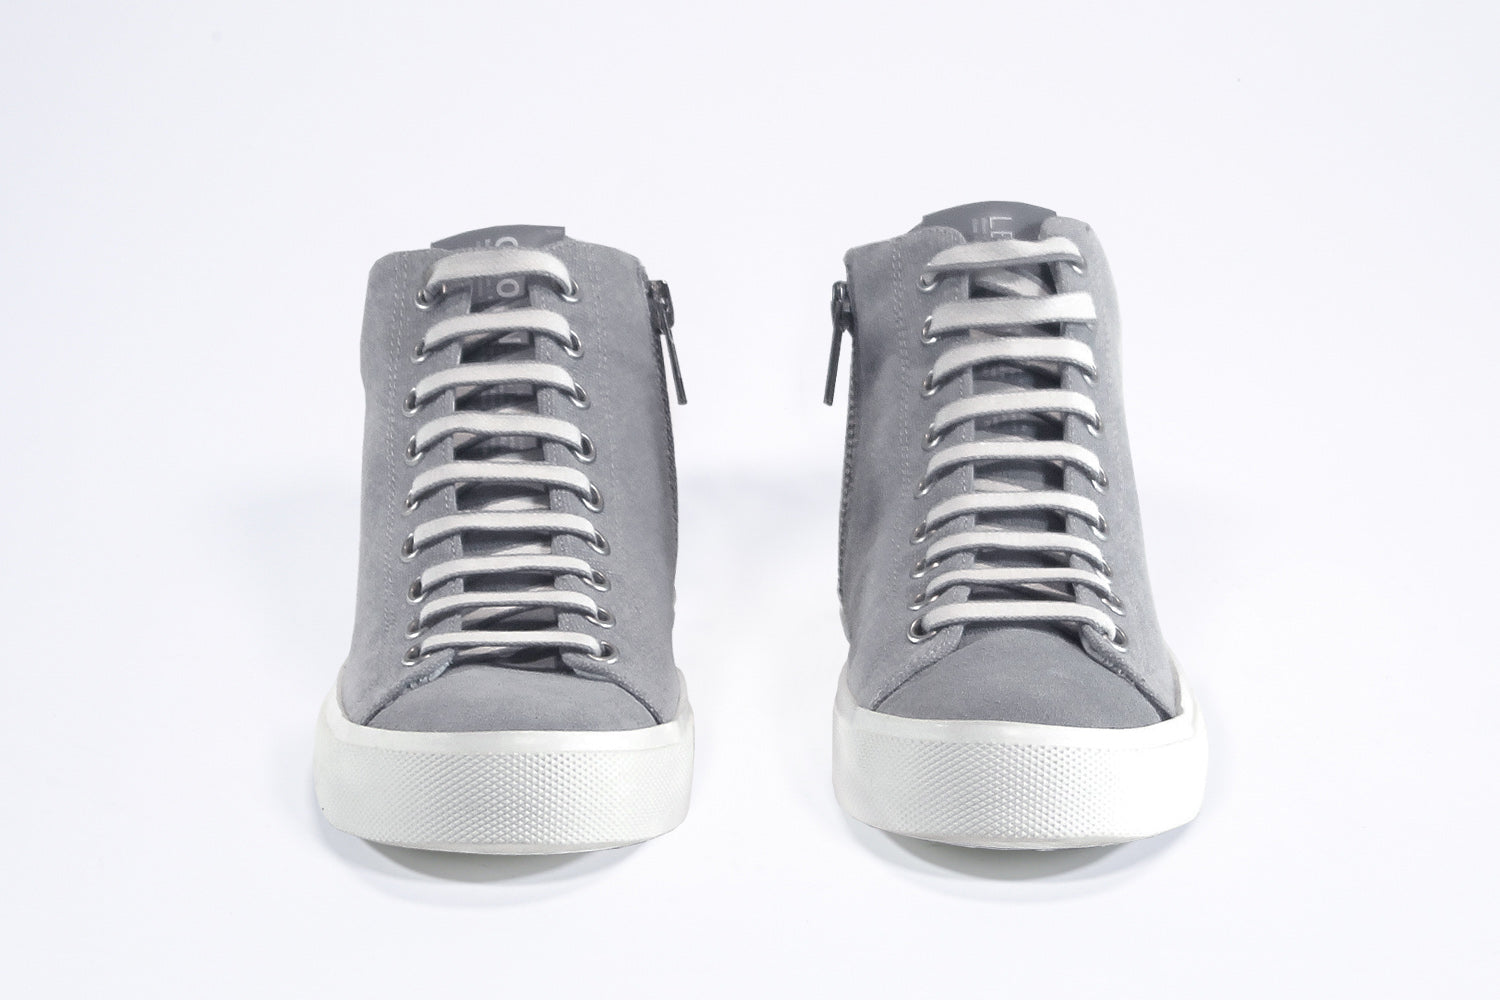 Vista frontale del modello mid top sneaker con tomaia in tela grigia, zip interna e suola bianca.